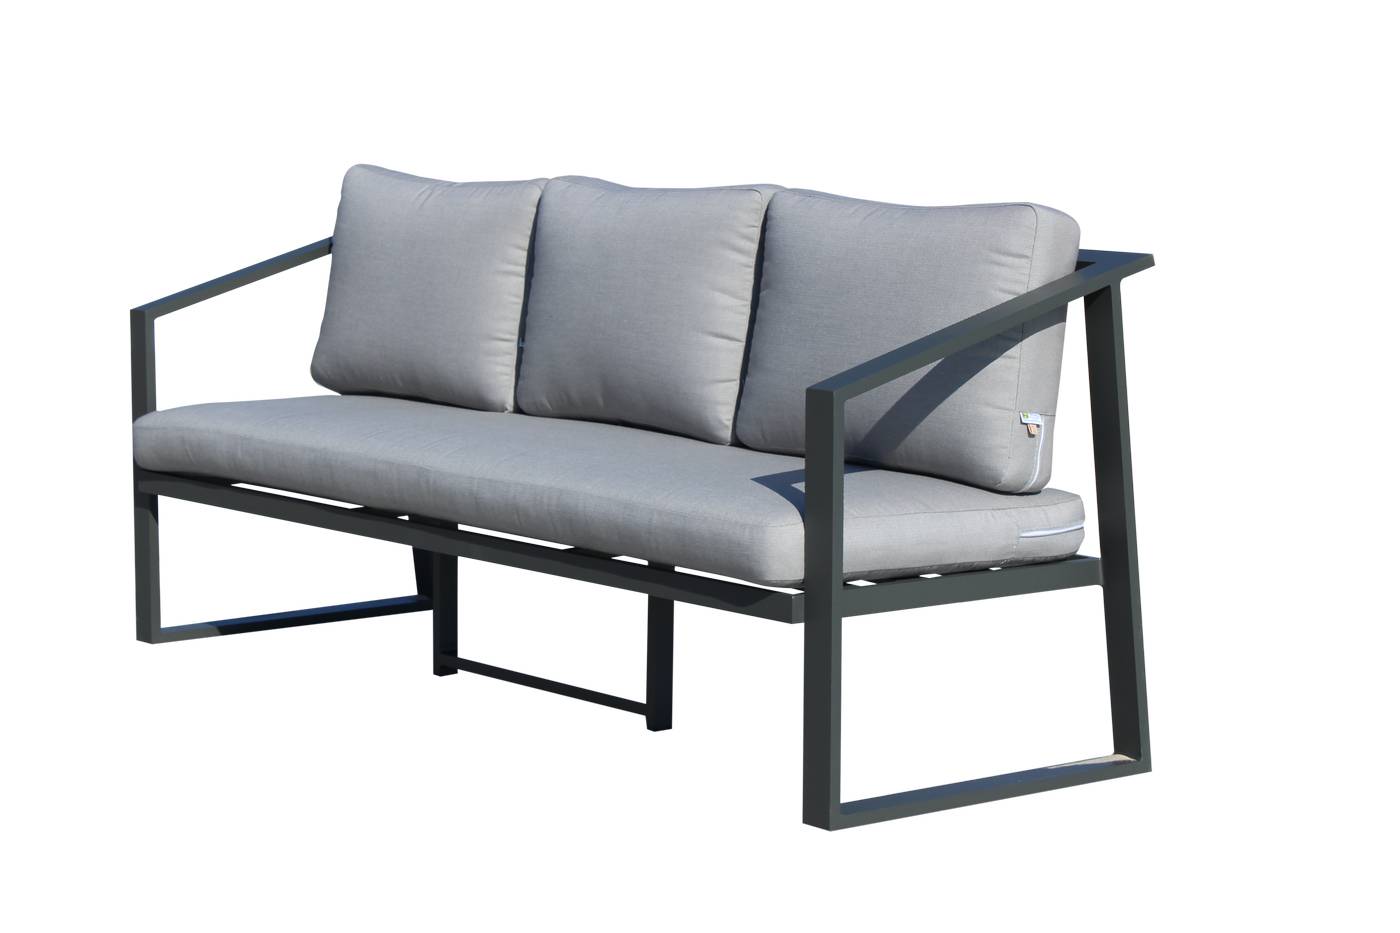 Sofá relax 3 plazas para exterior. Fabricado de aluminio en color blanco o antracita.